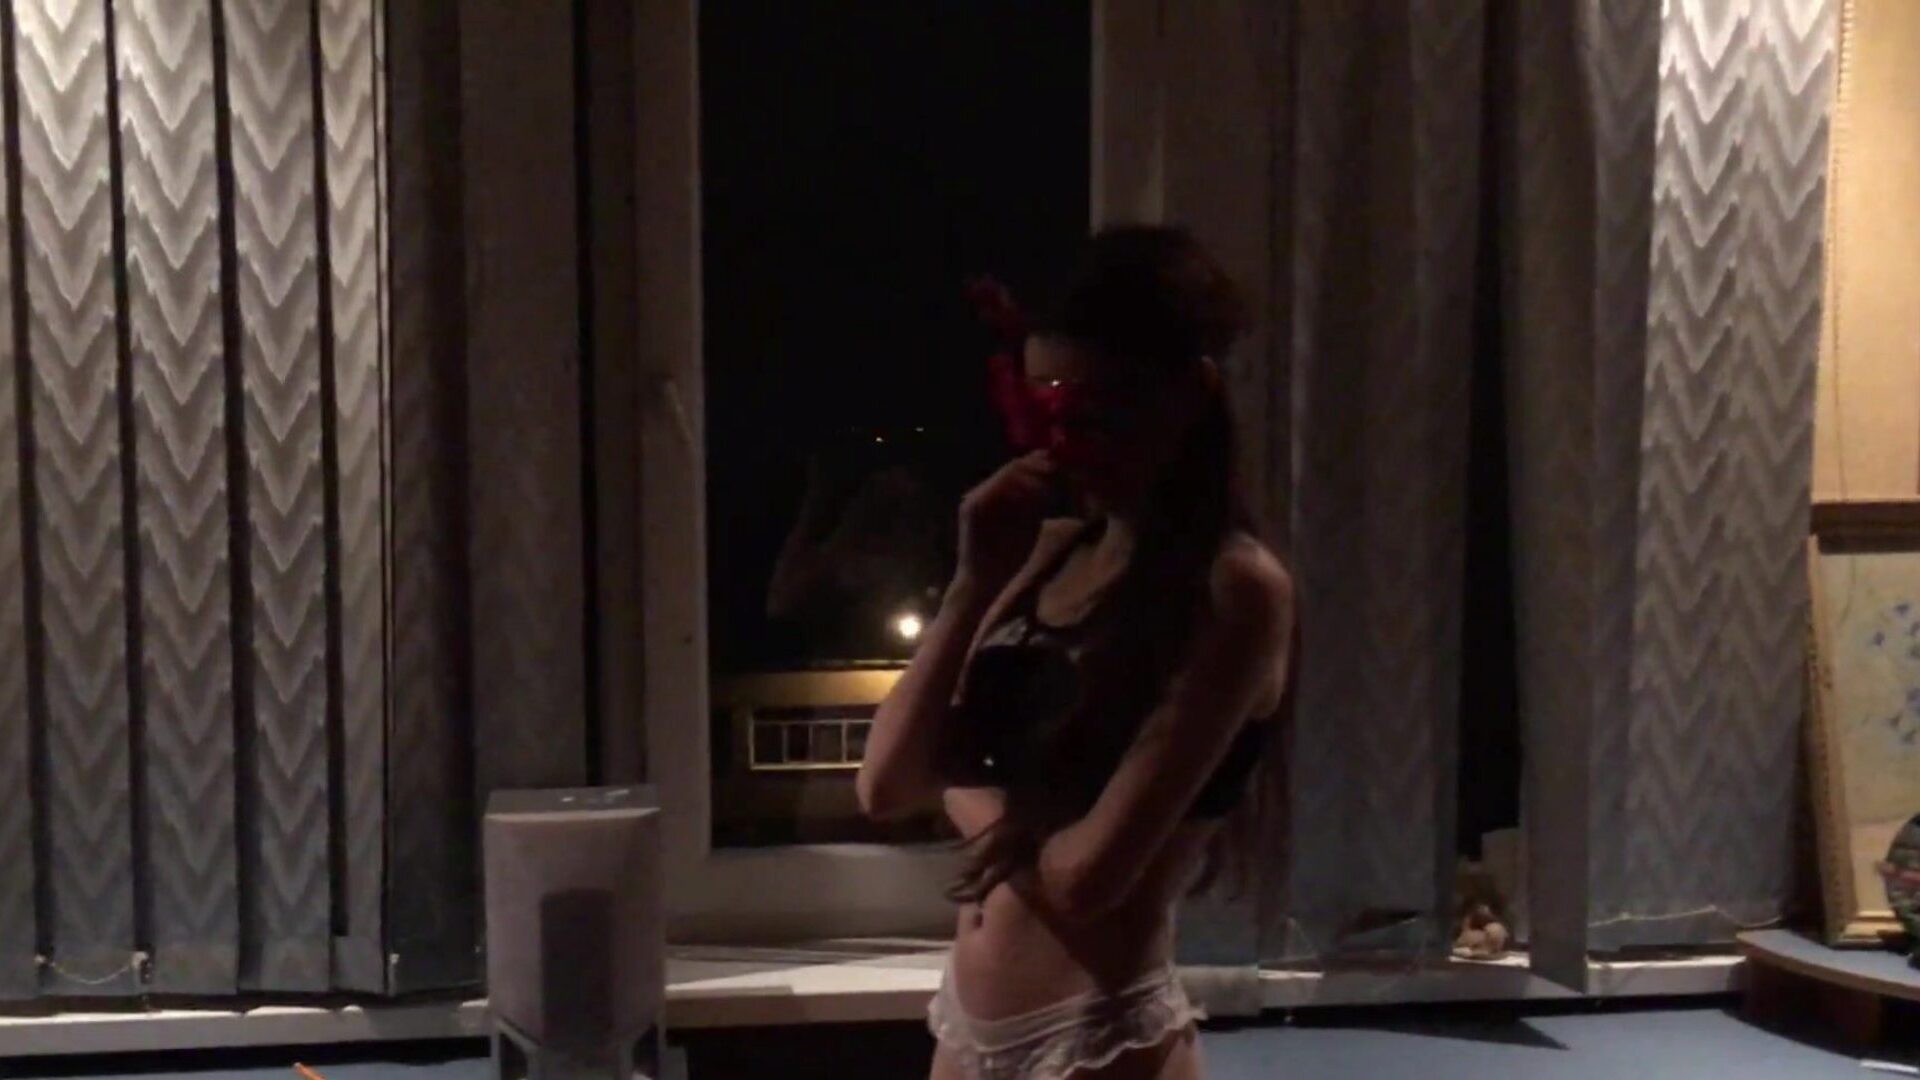 luksusowa seks dziewczyna pokazuje swoje ciało i rucha się - Cherriesteen